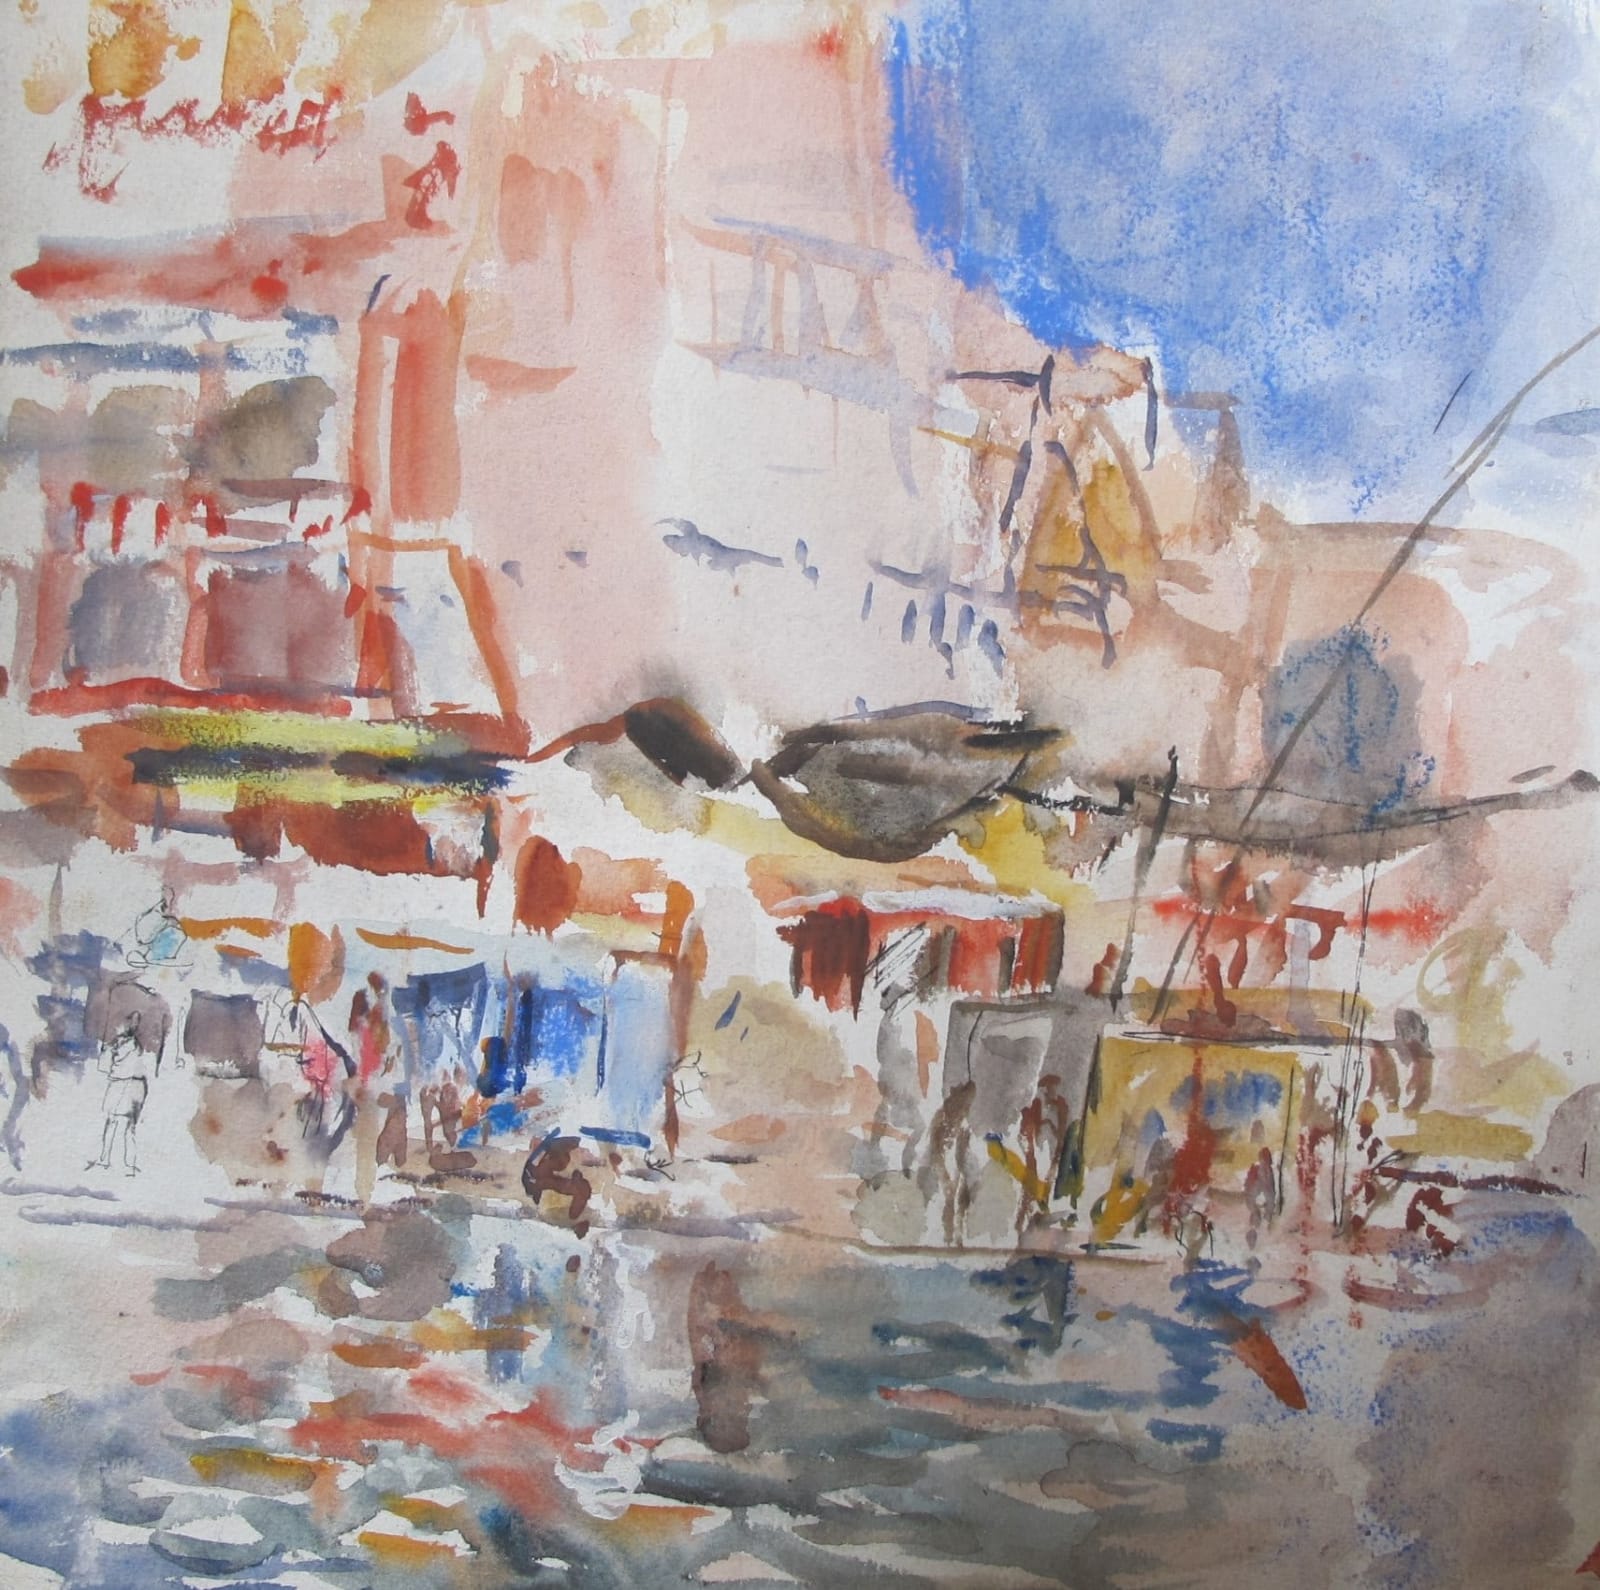 ANTHONY EYTON, On the River, Varanasi